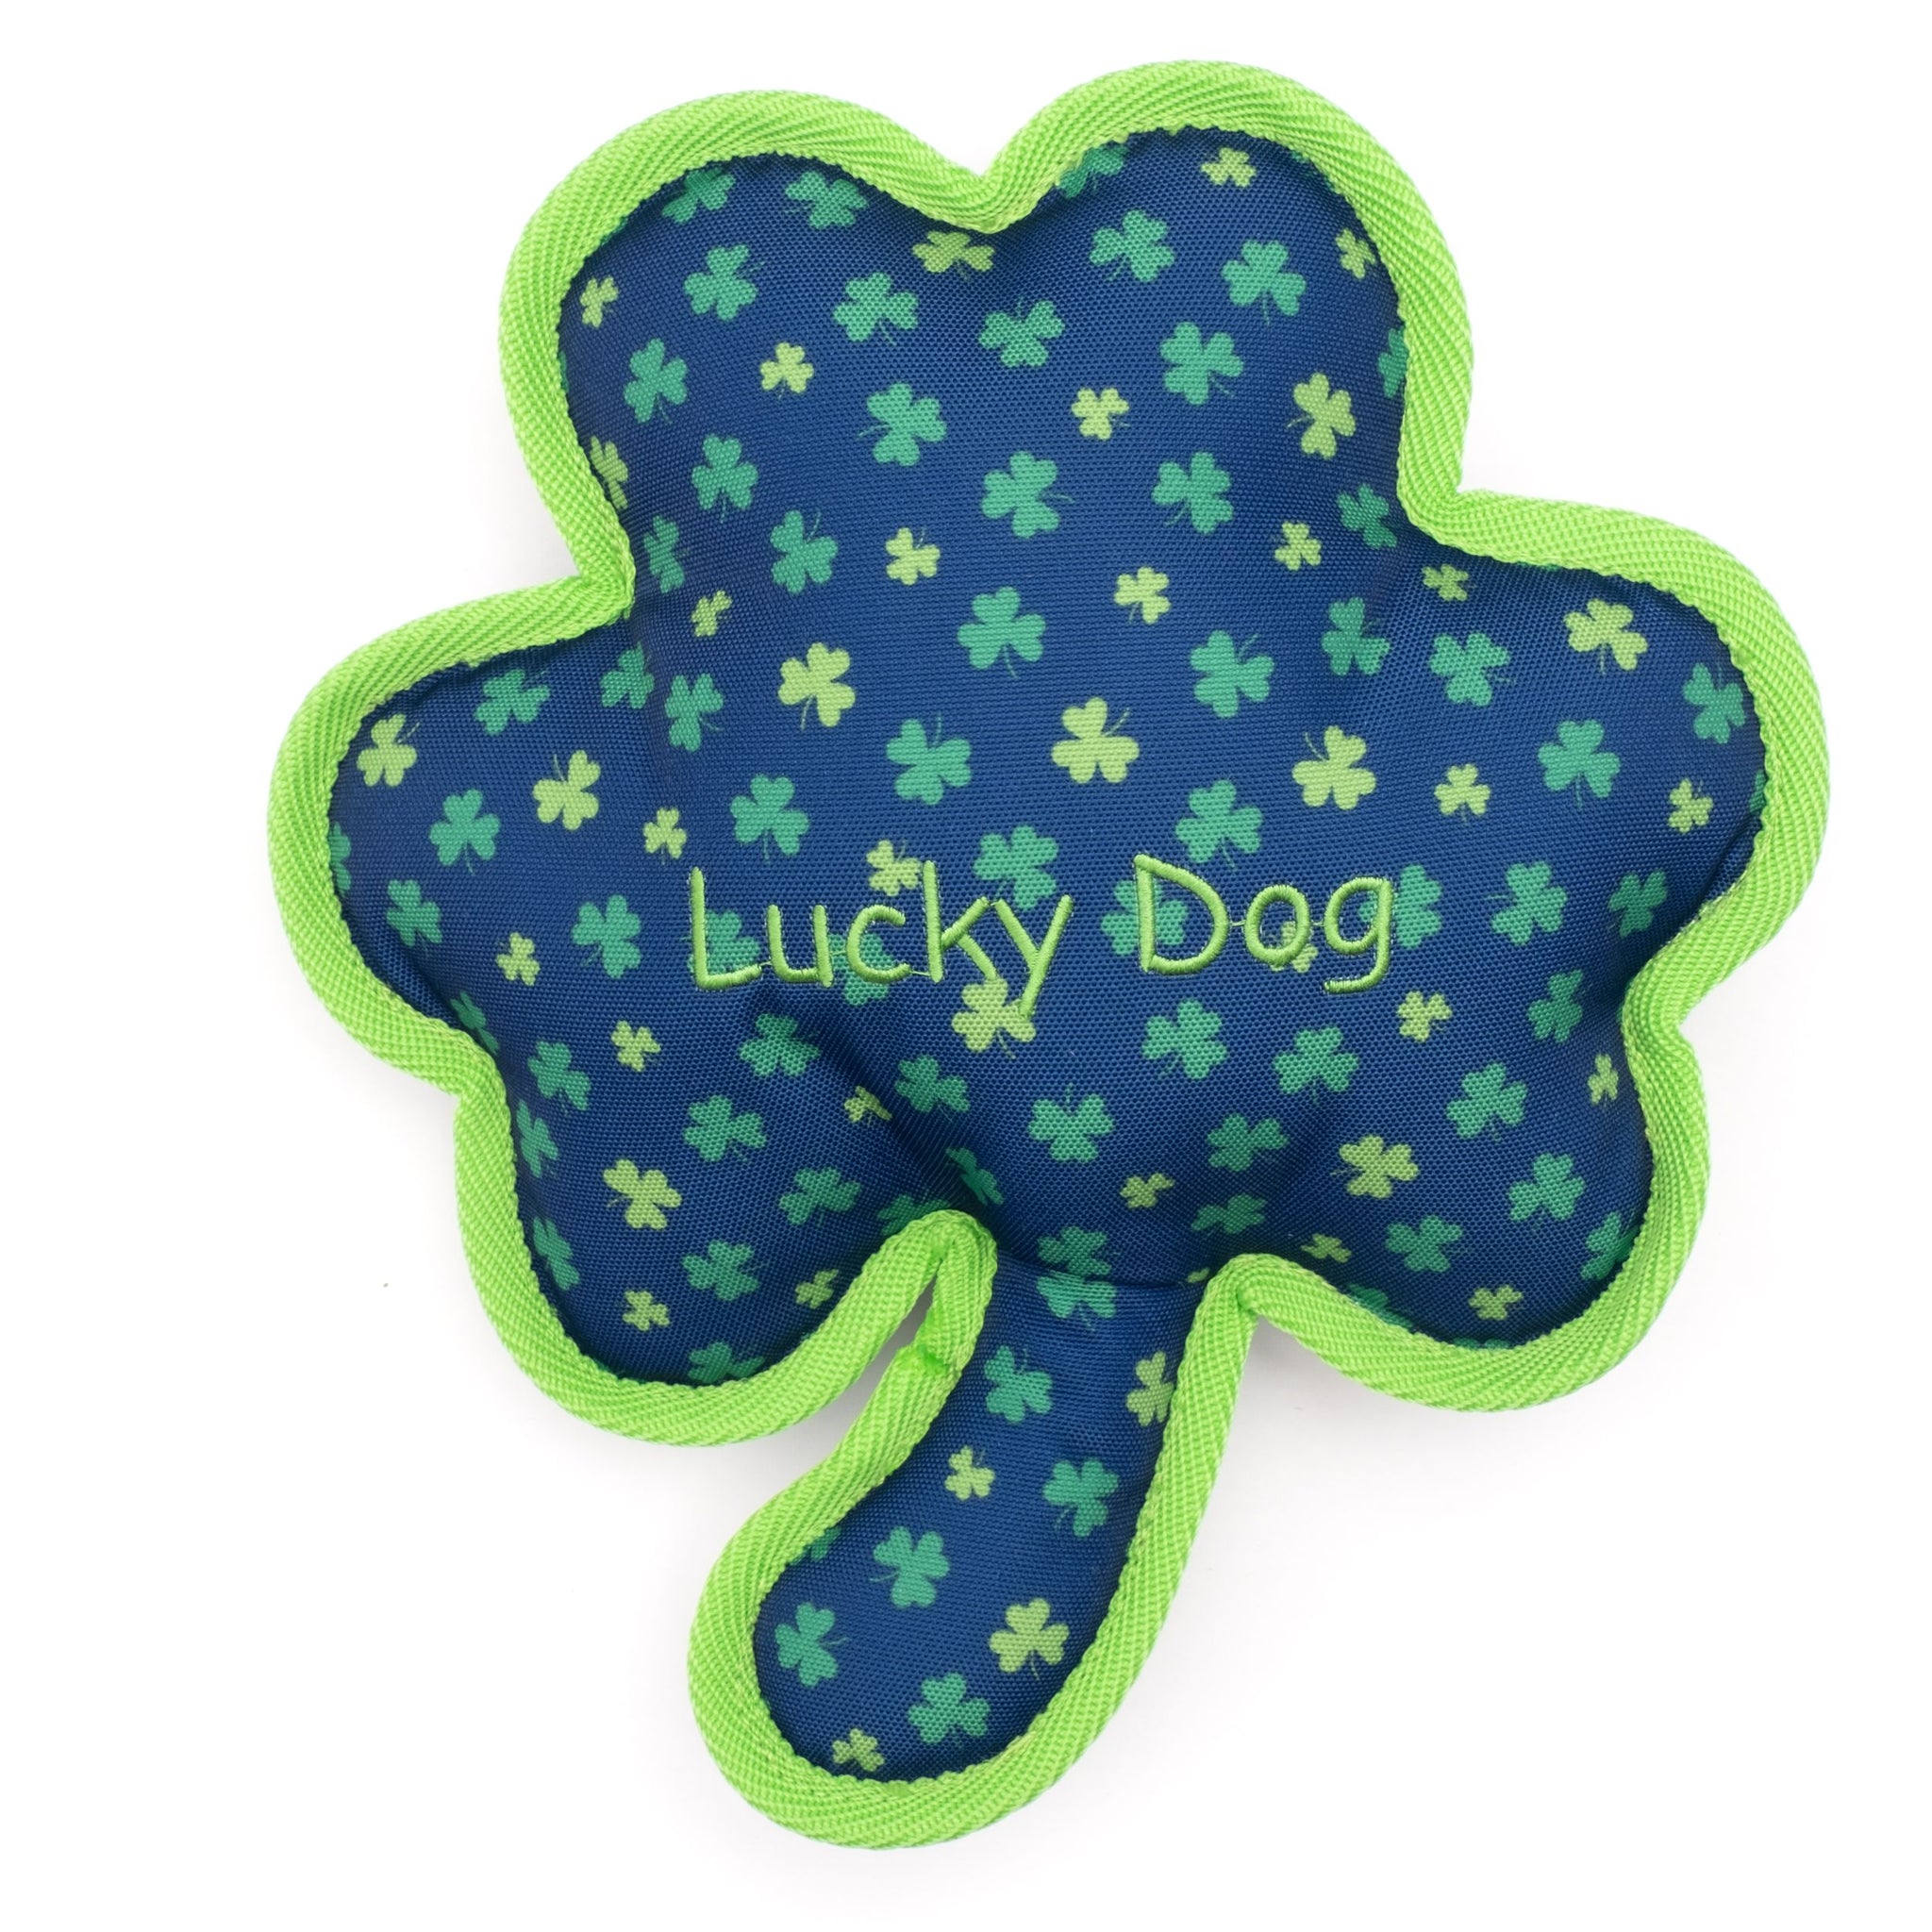 Worthy Dog Plush Lucky Dog Toy